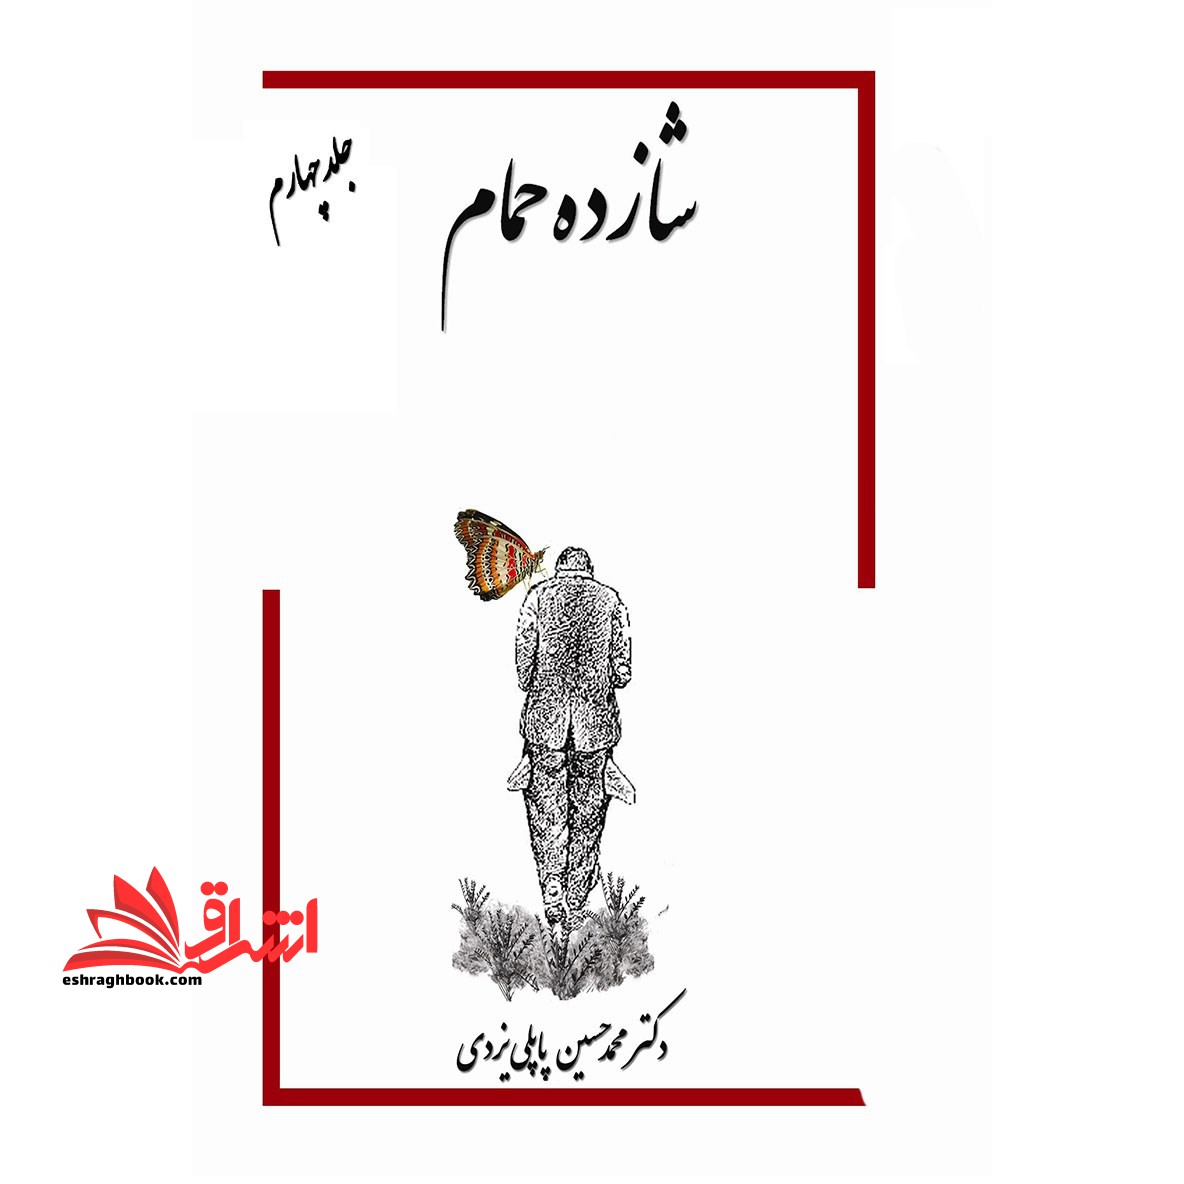 شازده حمام جلد چهارم برنده ی ویژه کتاب سال جشنواره جلال آل احمد